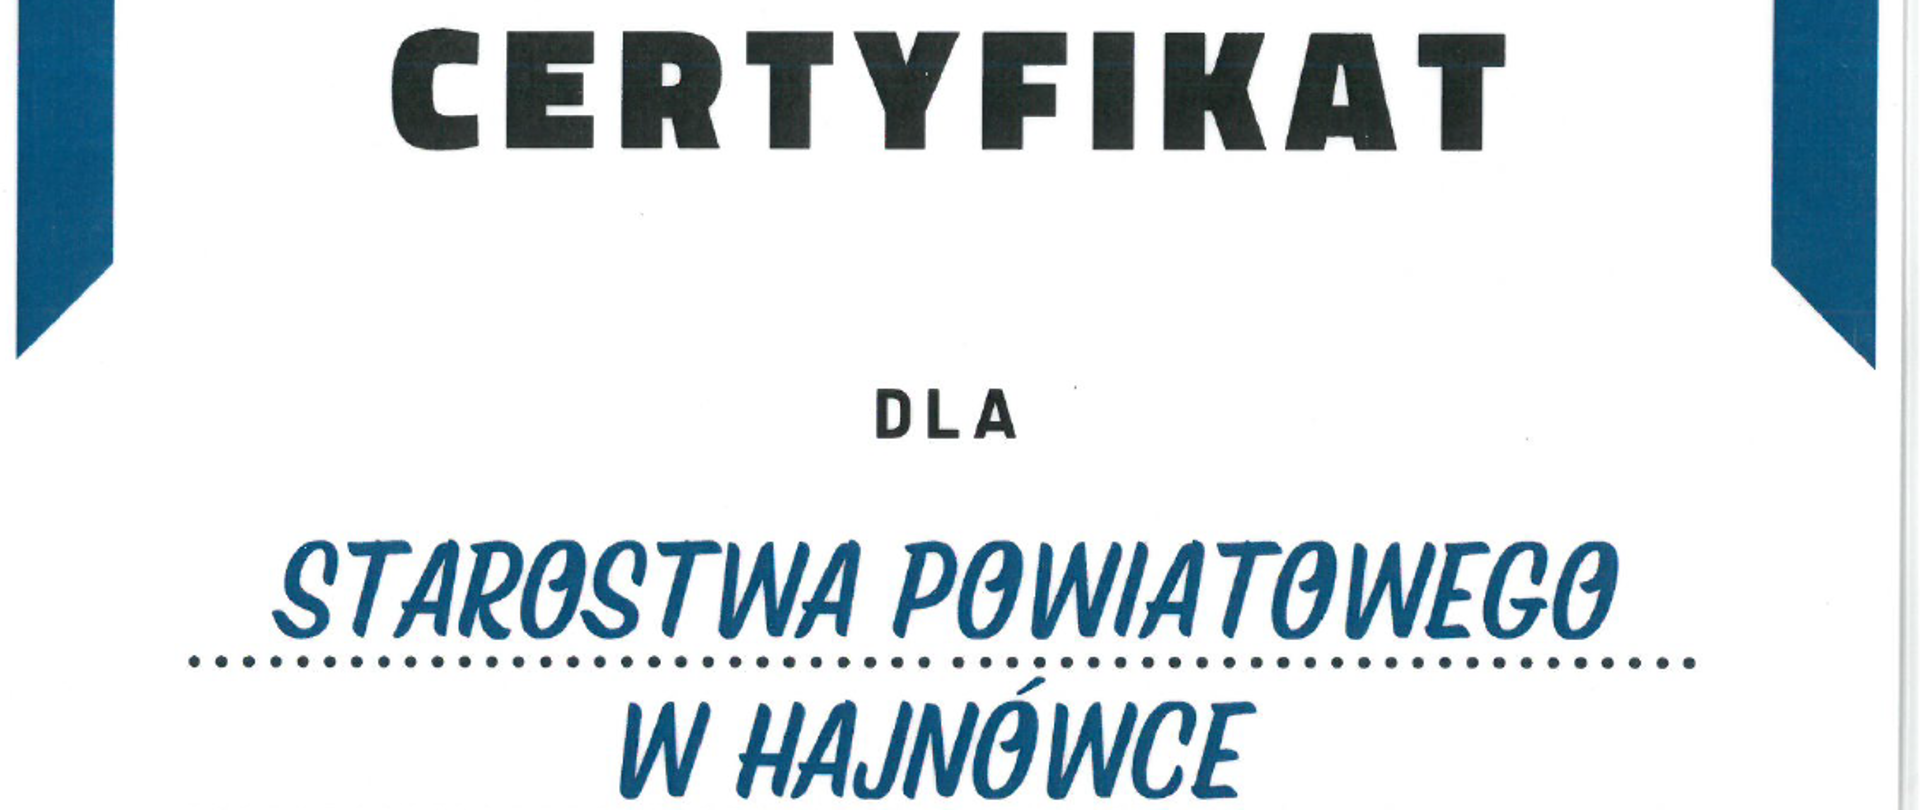 Certyfikat dla Starostwa Powiatowego w Hajnówce partnera ogólnopolskiej kampanii społecznej